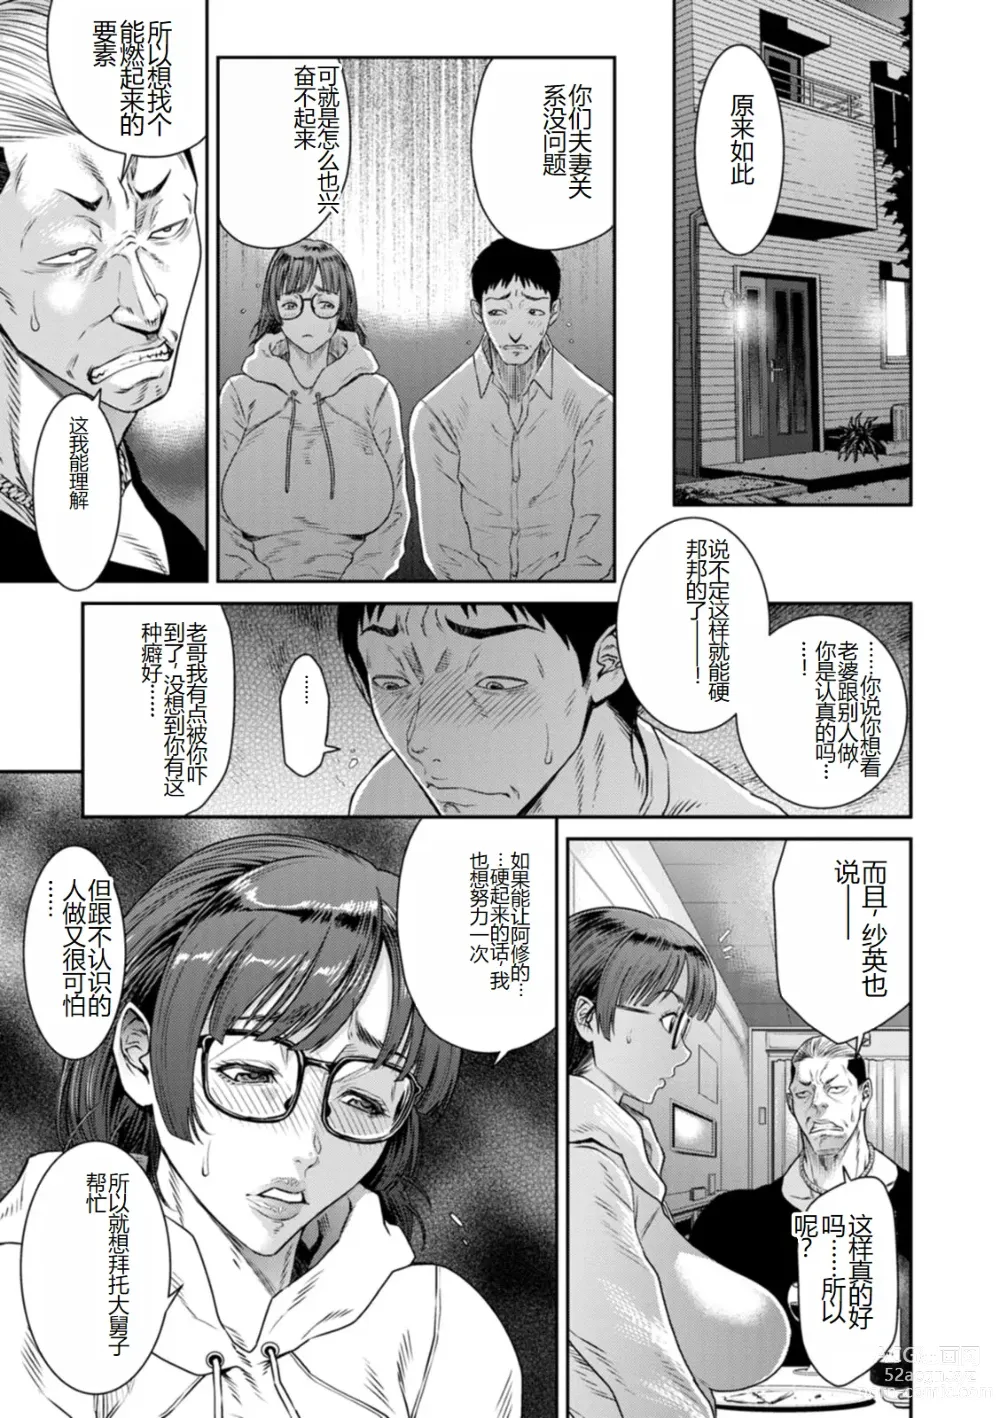 Page 167 of manga Waisetsu Box - Obscene Box